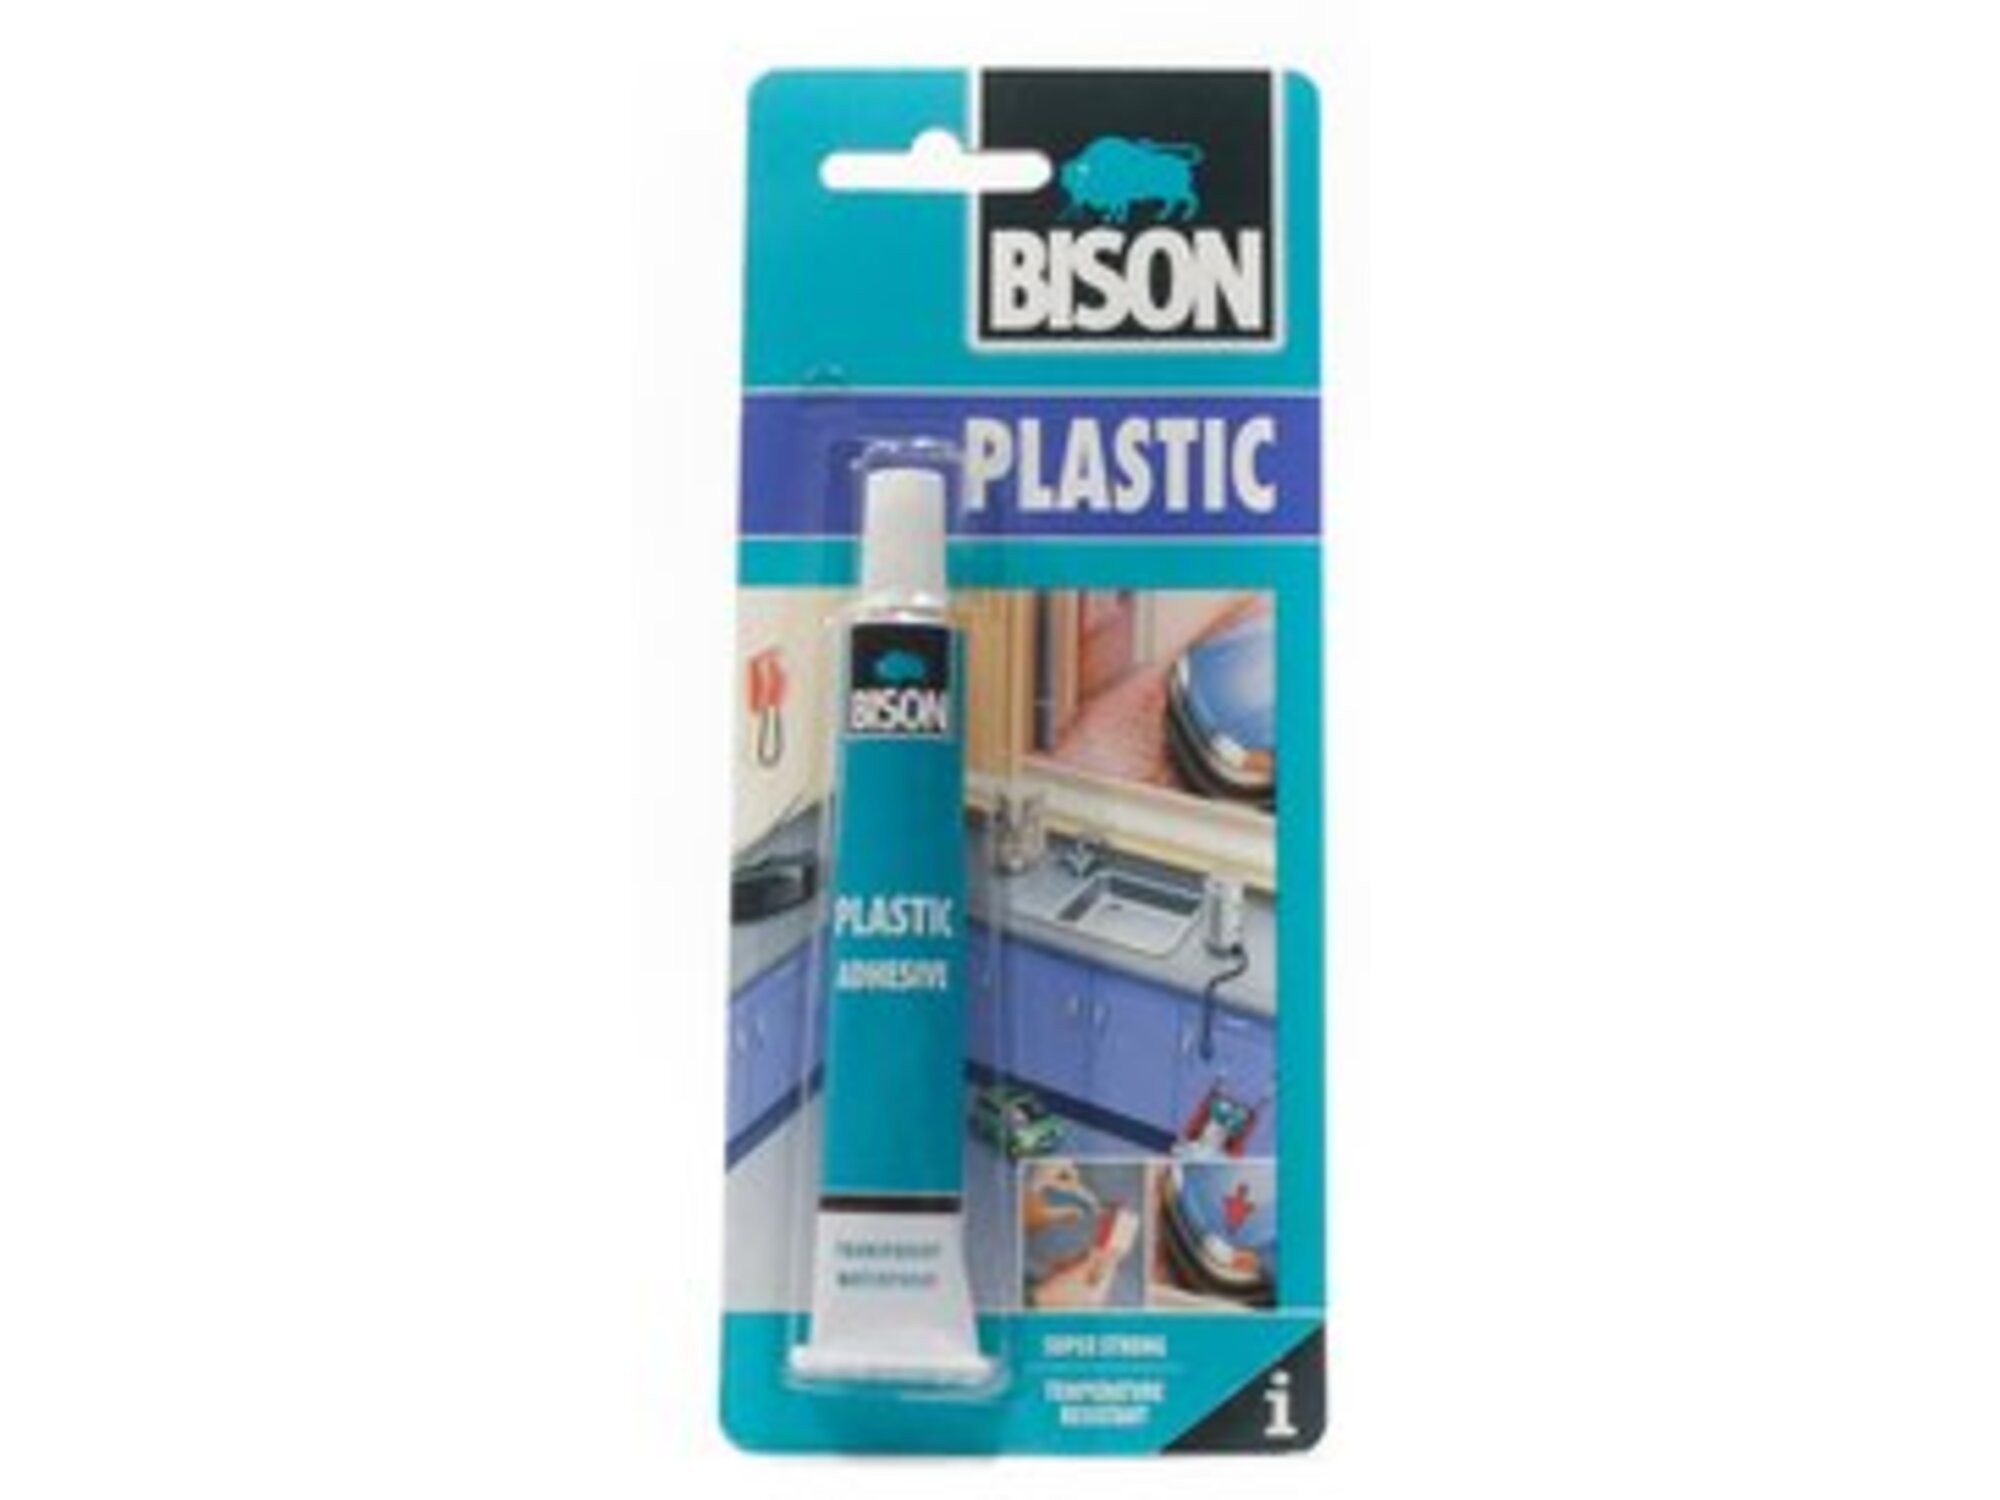 Bison Plastic lepak za tvrdu plastiku